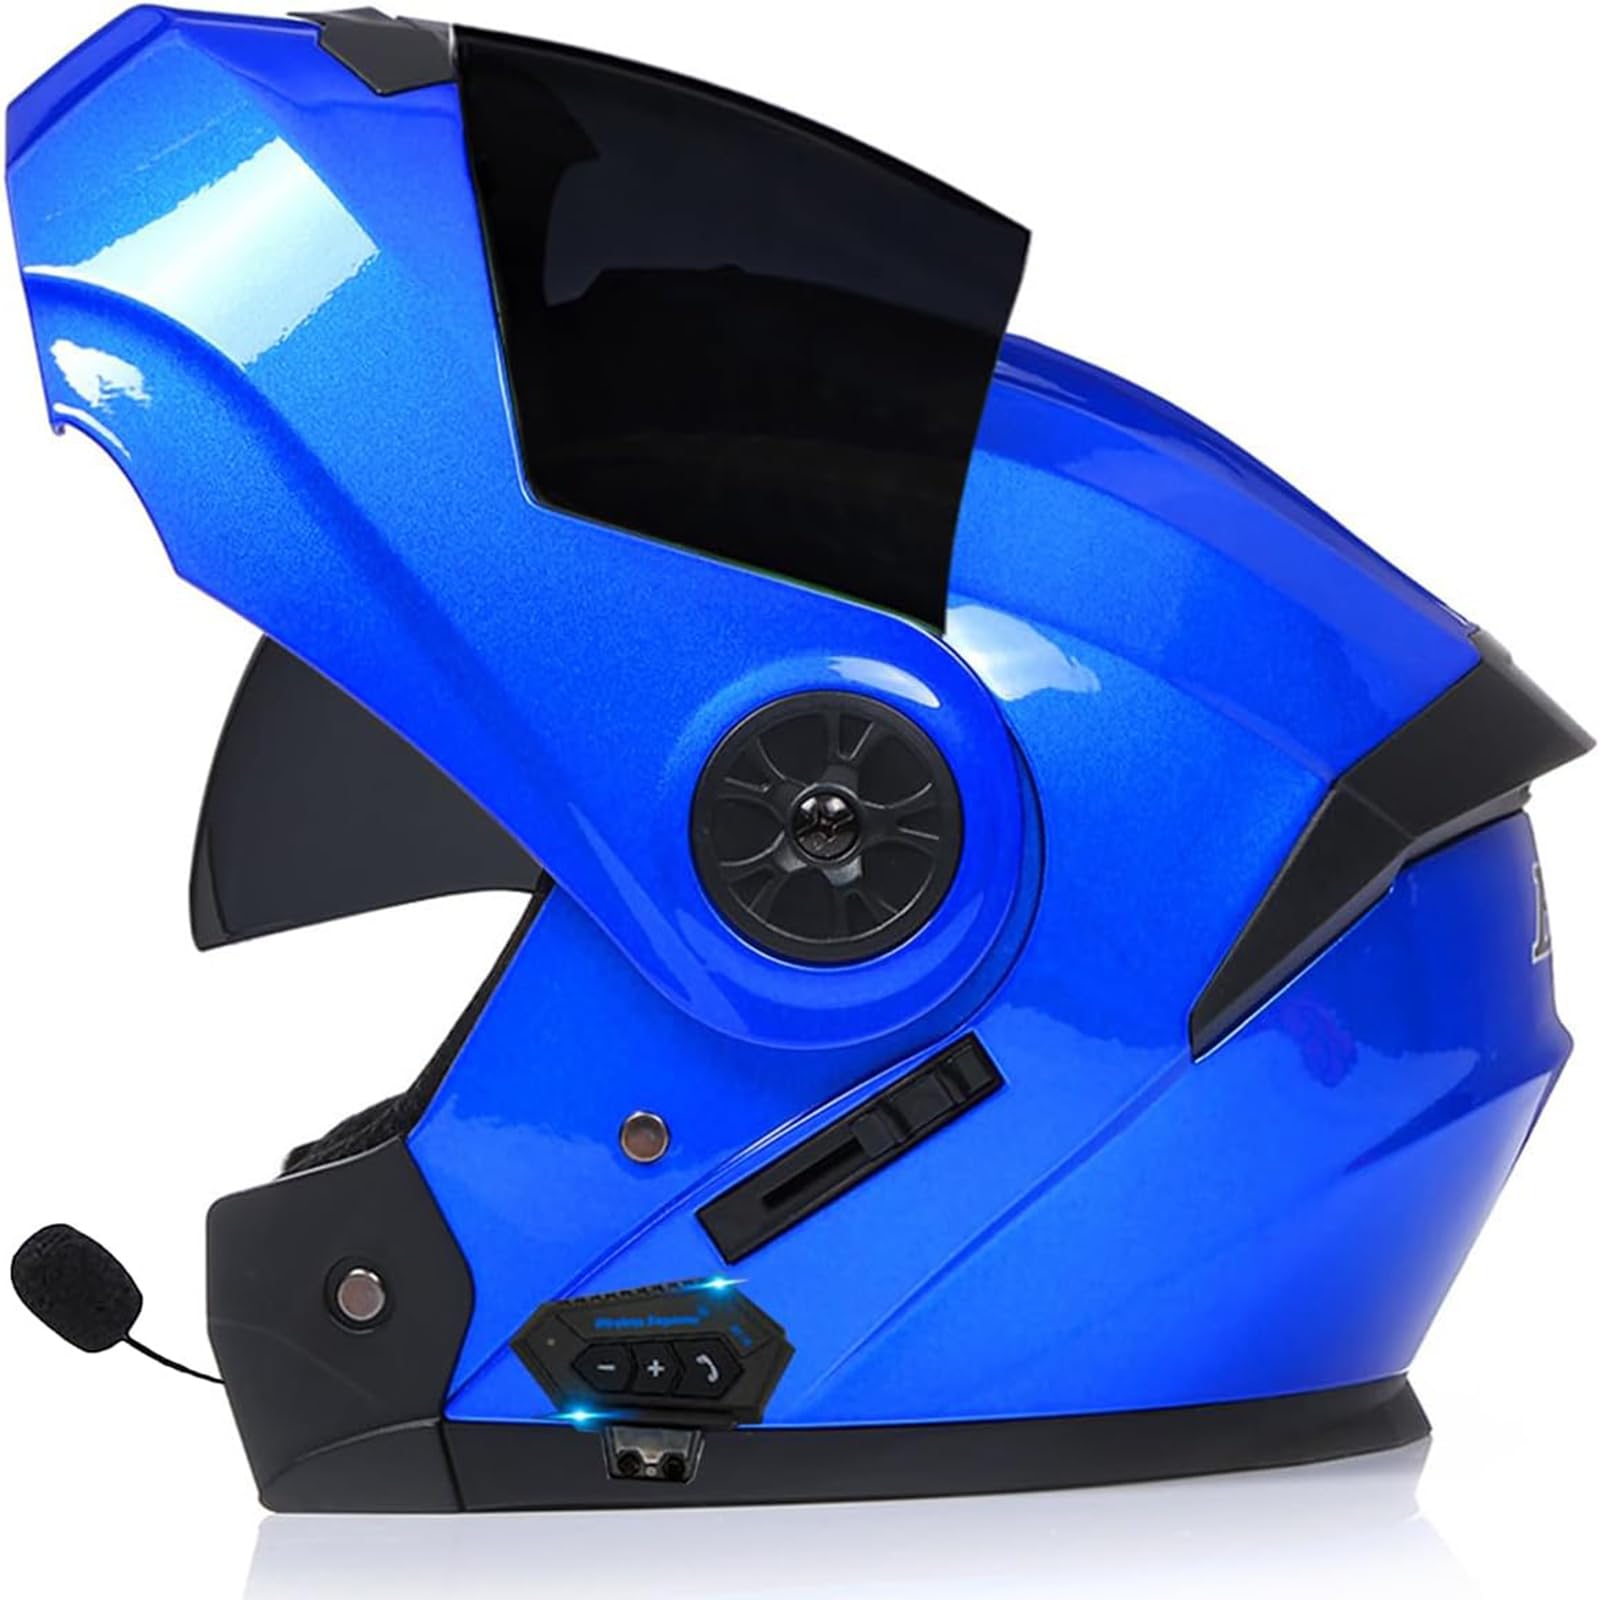 Unisex Bluetooth Integrierter Motorrad Modularer Helm Klapphelm Full Face Motorradhelm ECE Genehmigt Motorrad Helm Rollerhelm Für Frauen Männer Anti-Fog-Doppelspiegel Sturzhelm von SDPPTY